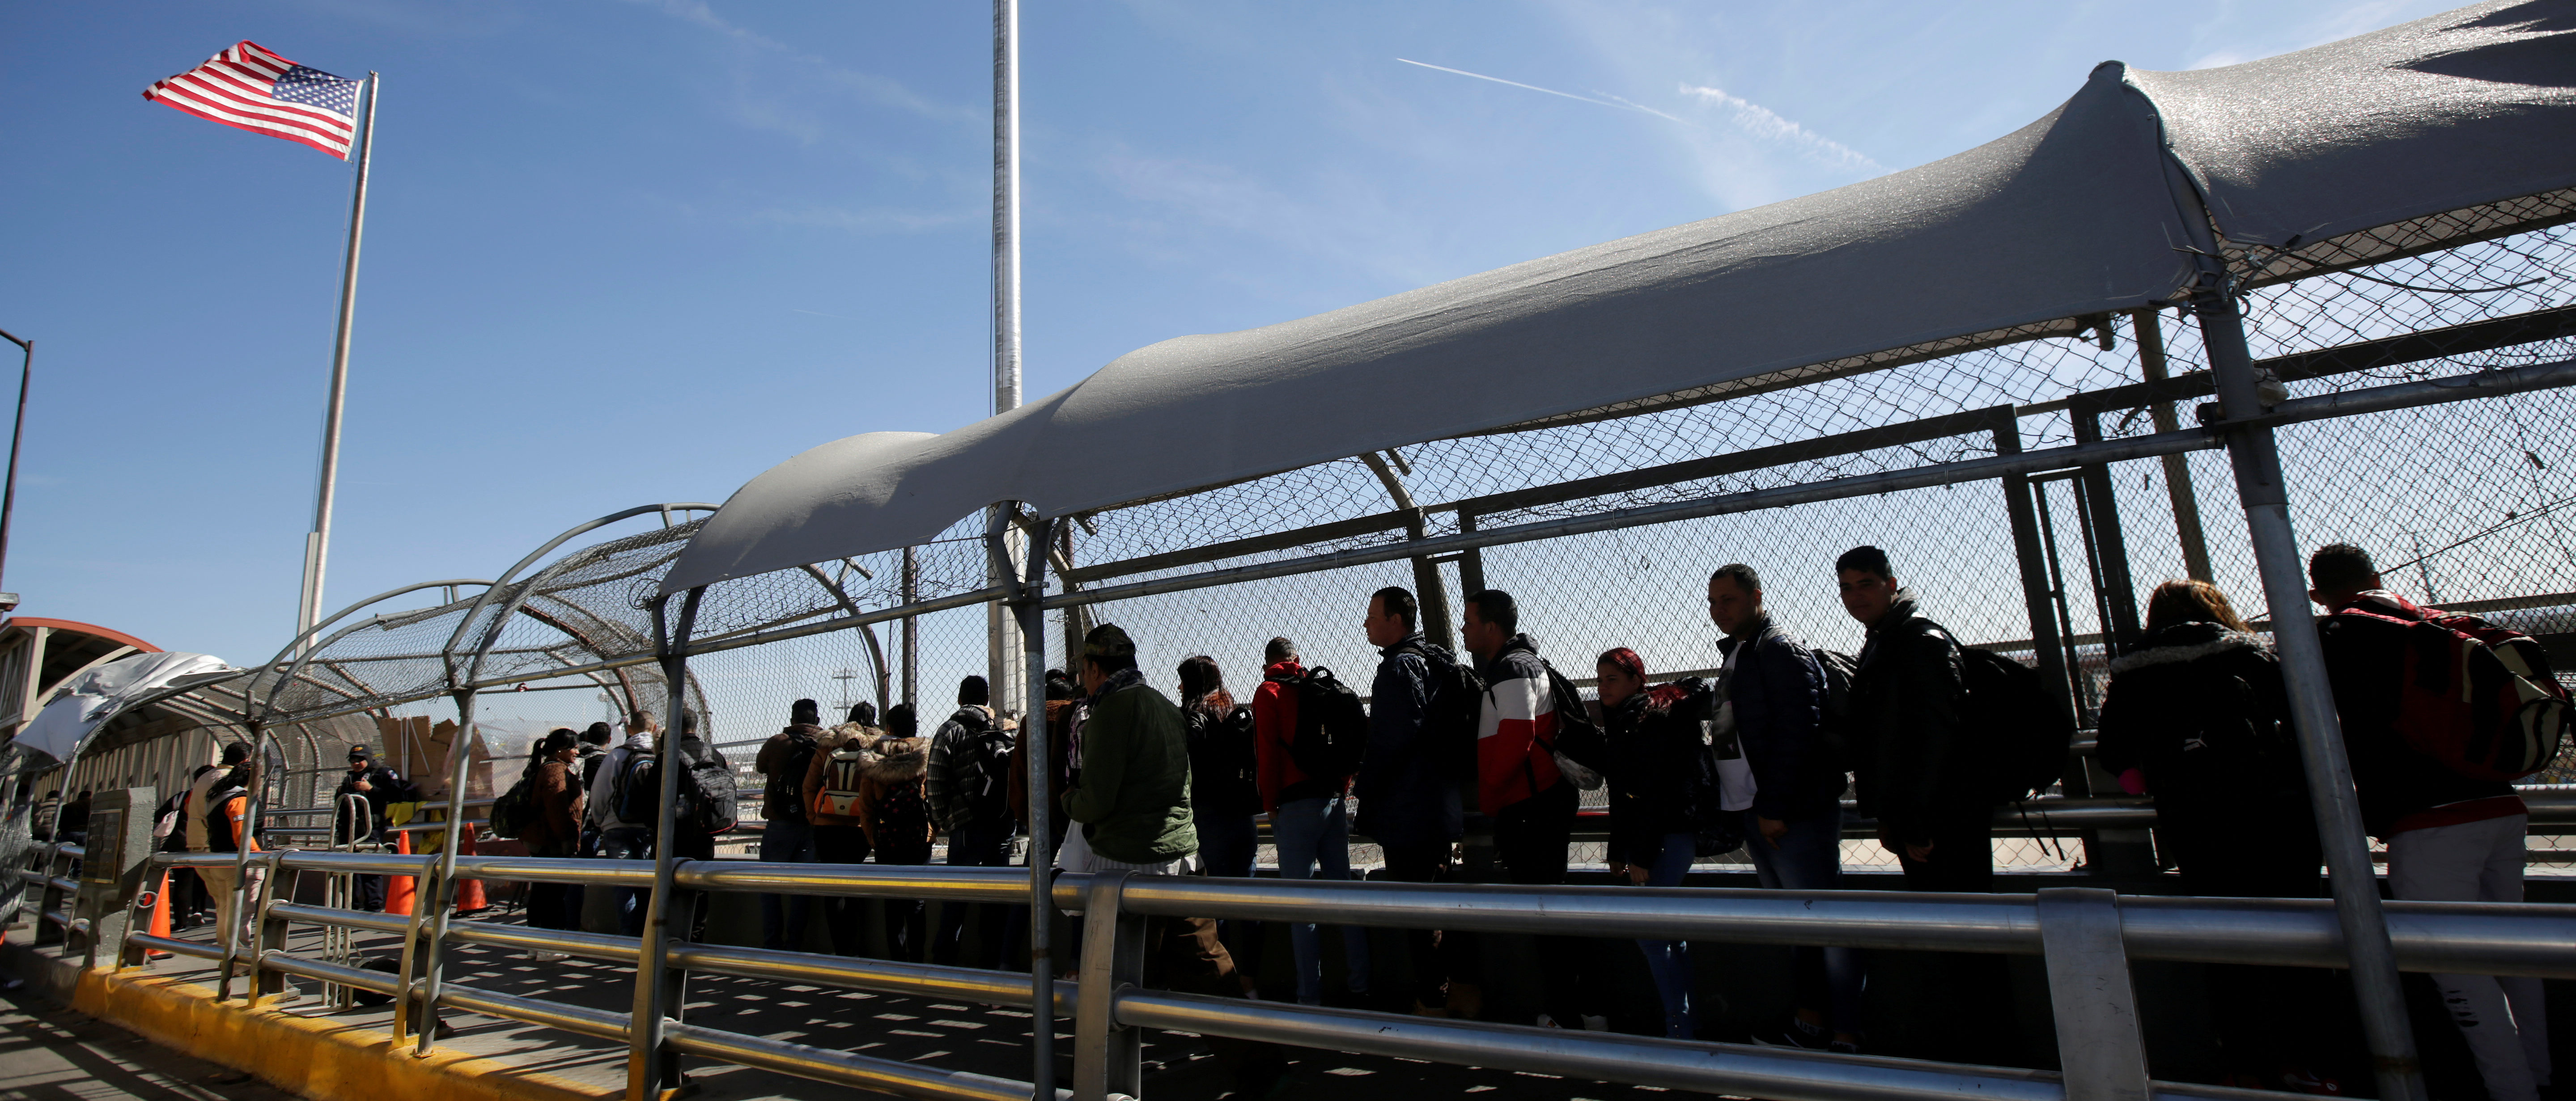 Cuban migrants queue to enter El Paso, Texas to request asylum in U.S. in Ciudad Juarez